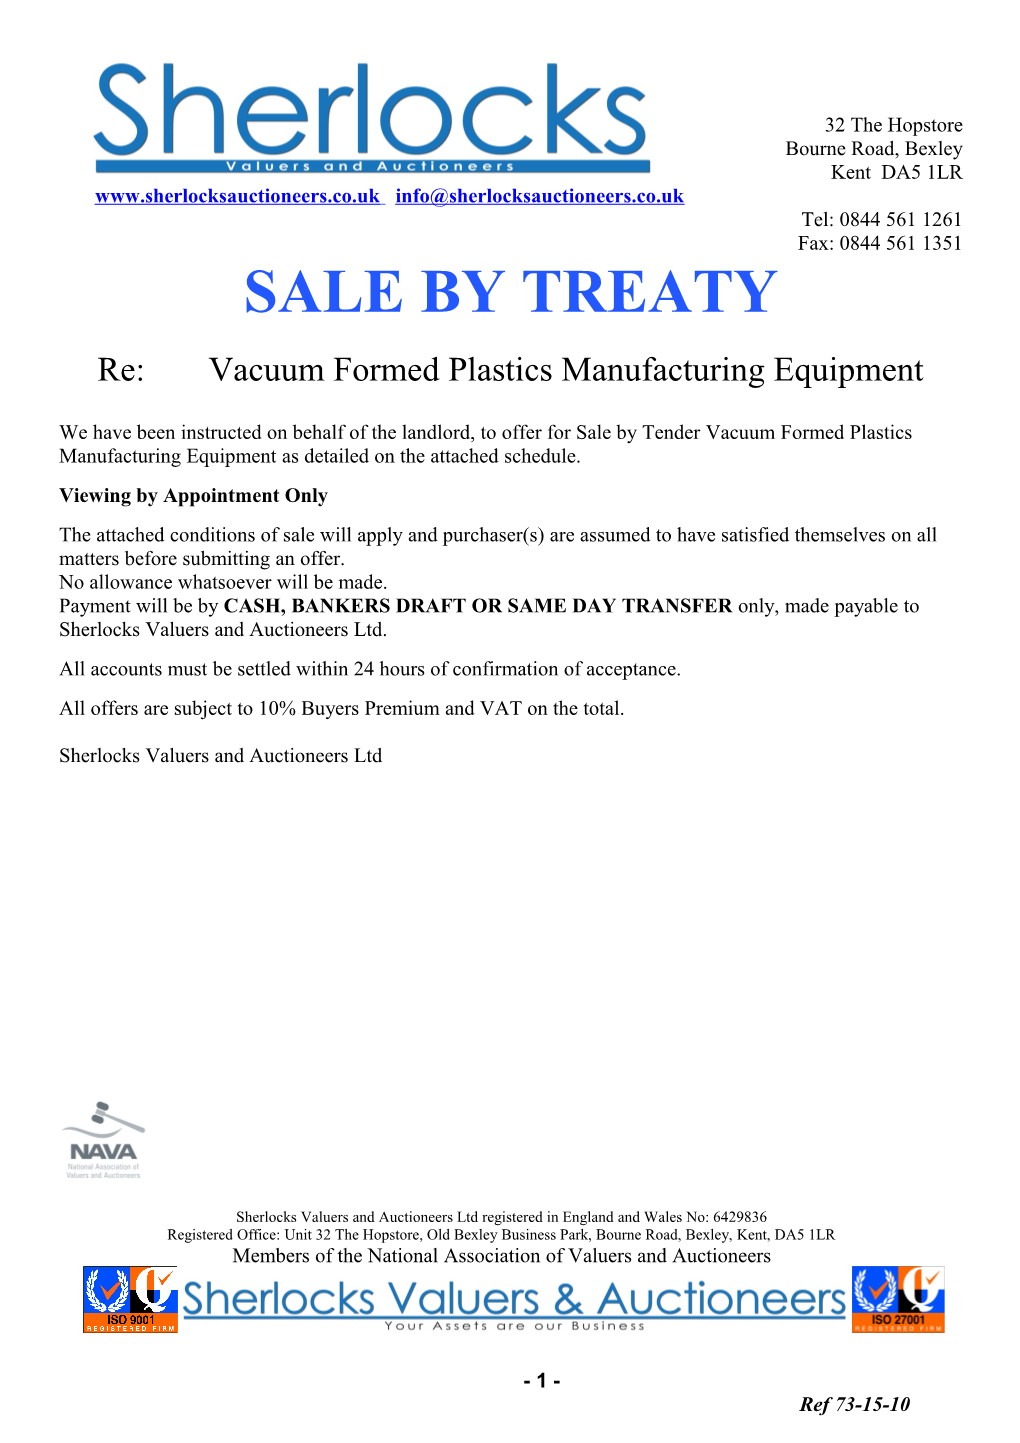 Re: Vacuum Formed Plastics Manufacturing Equipment